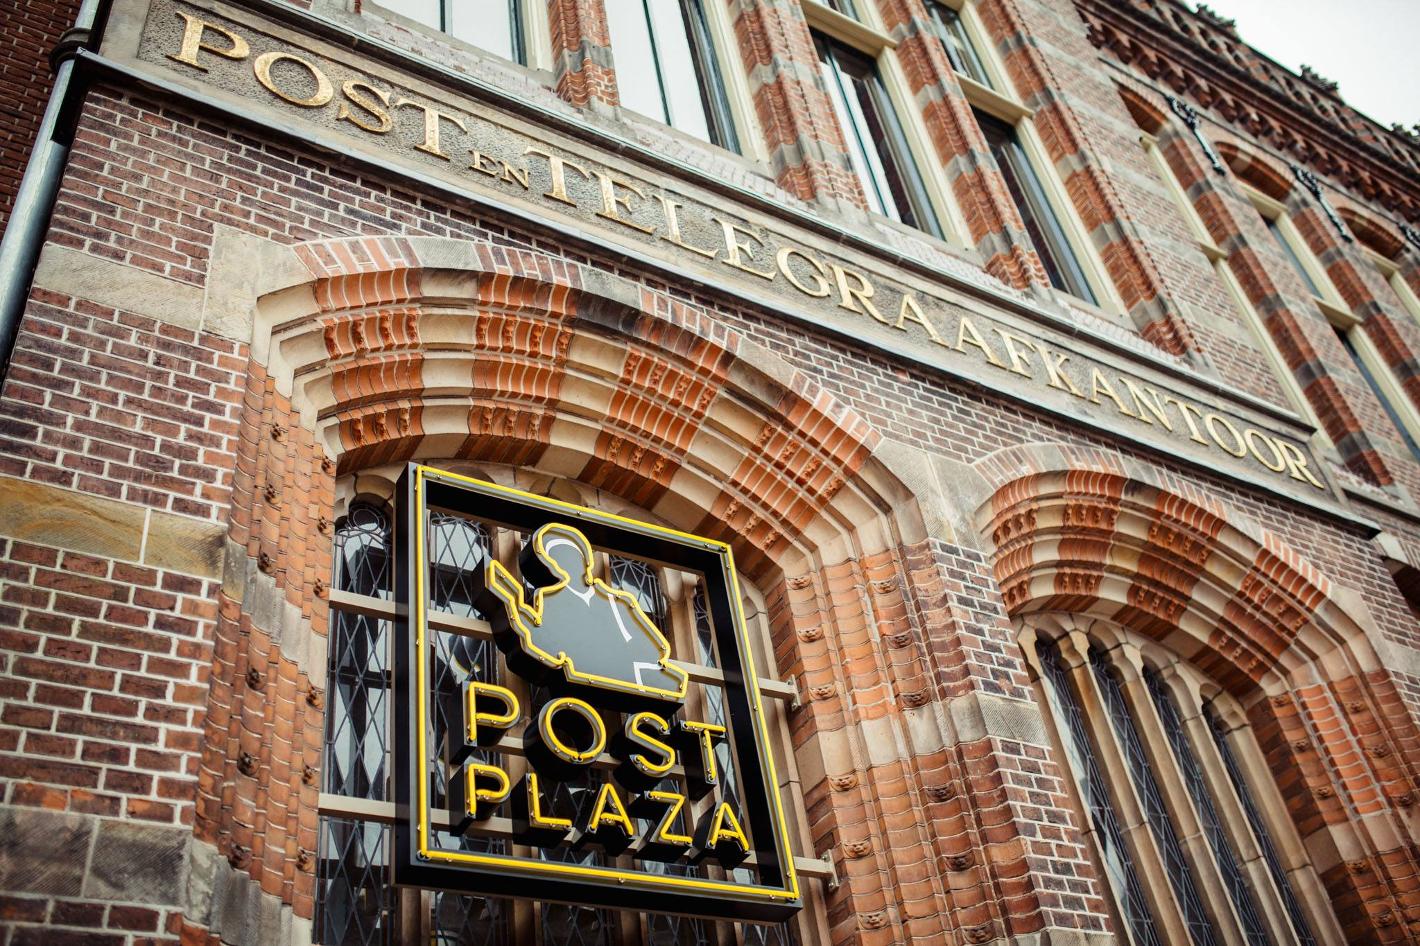 Foto Post-Plaza Hotel & Grand Café in Leeuwarden, Slapen, Hotels & logies - #1